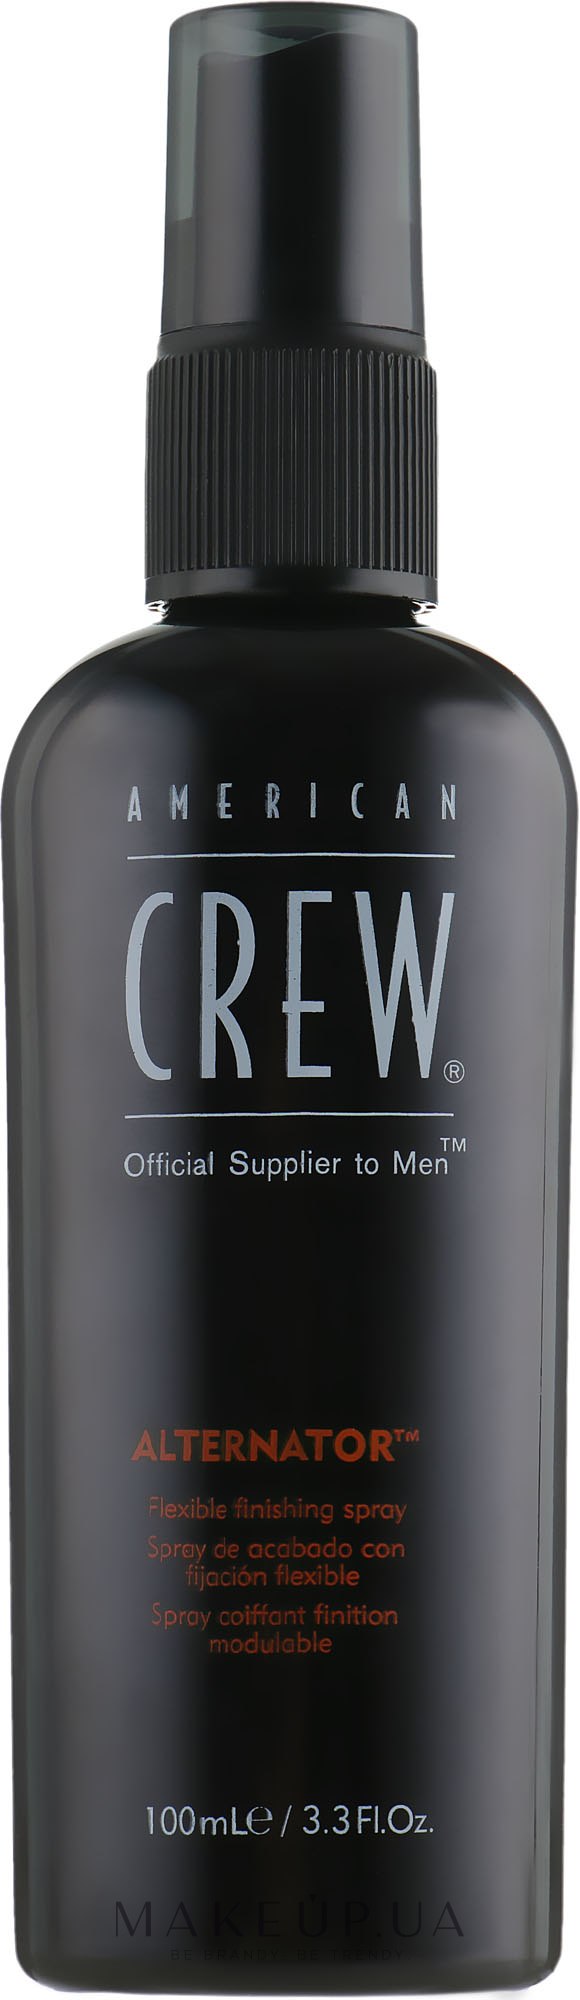 Спрей для стайлинга подвижной фиксации - American Crew Official Supplier to Men Alternator Flexible Styling and Finishing Spray — фото 100ml